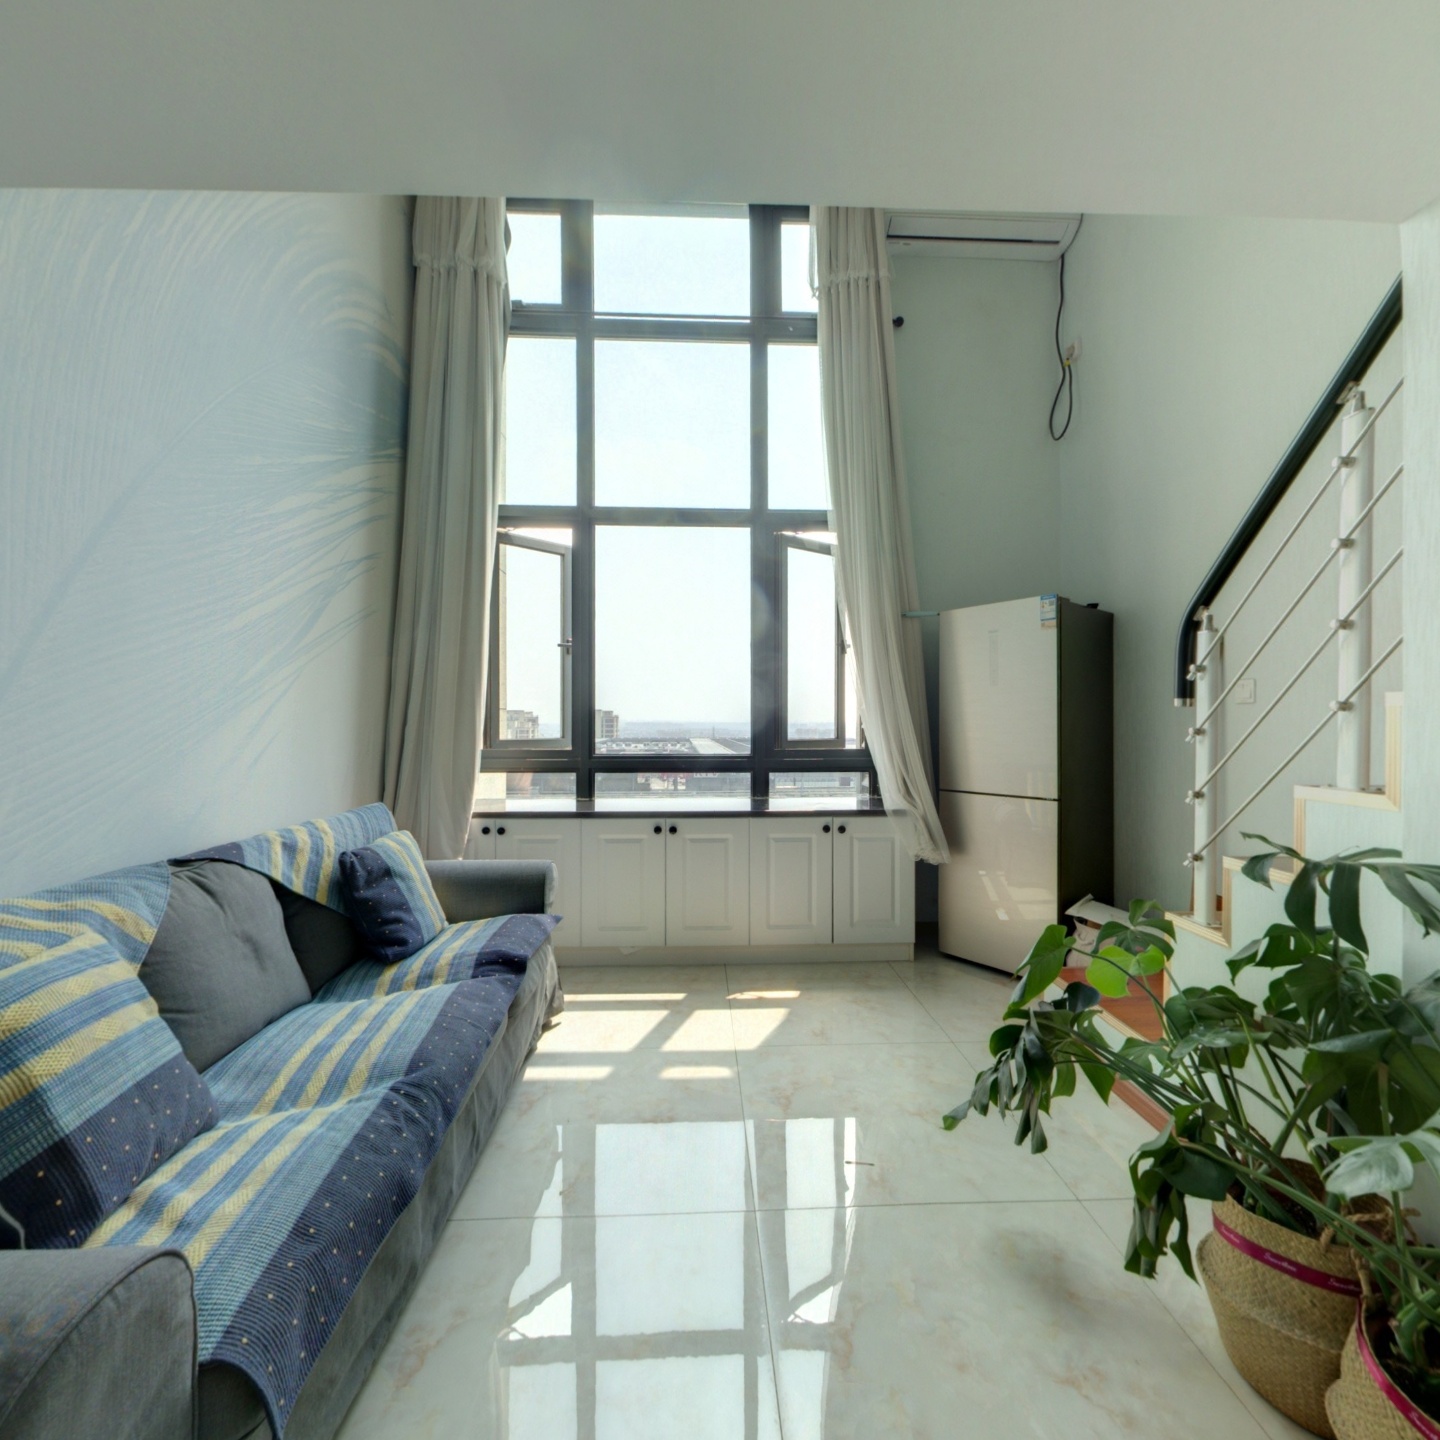 怡丰城公寓买放松全套家具热水器洗衣机空调床和床垫